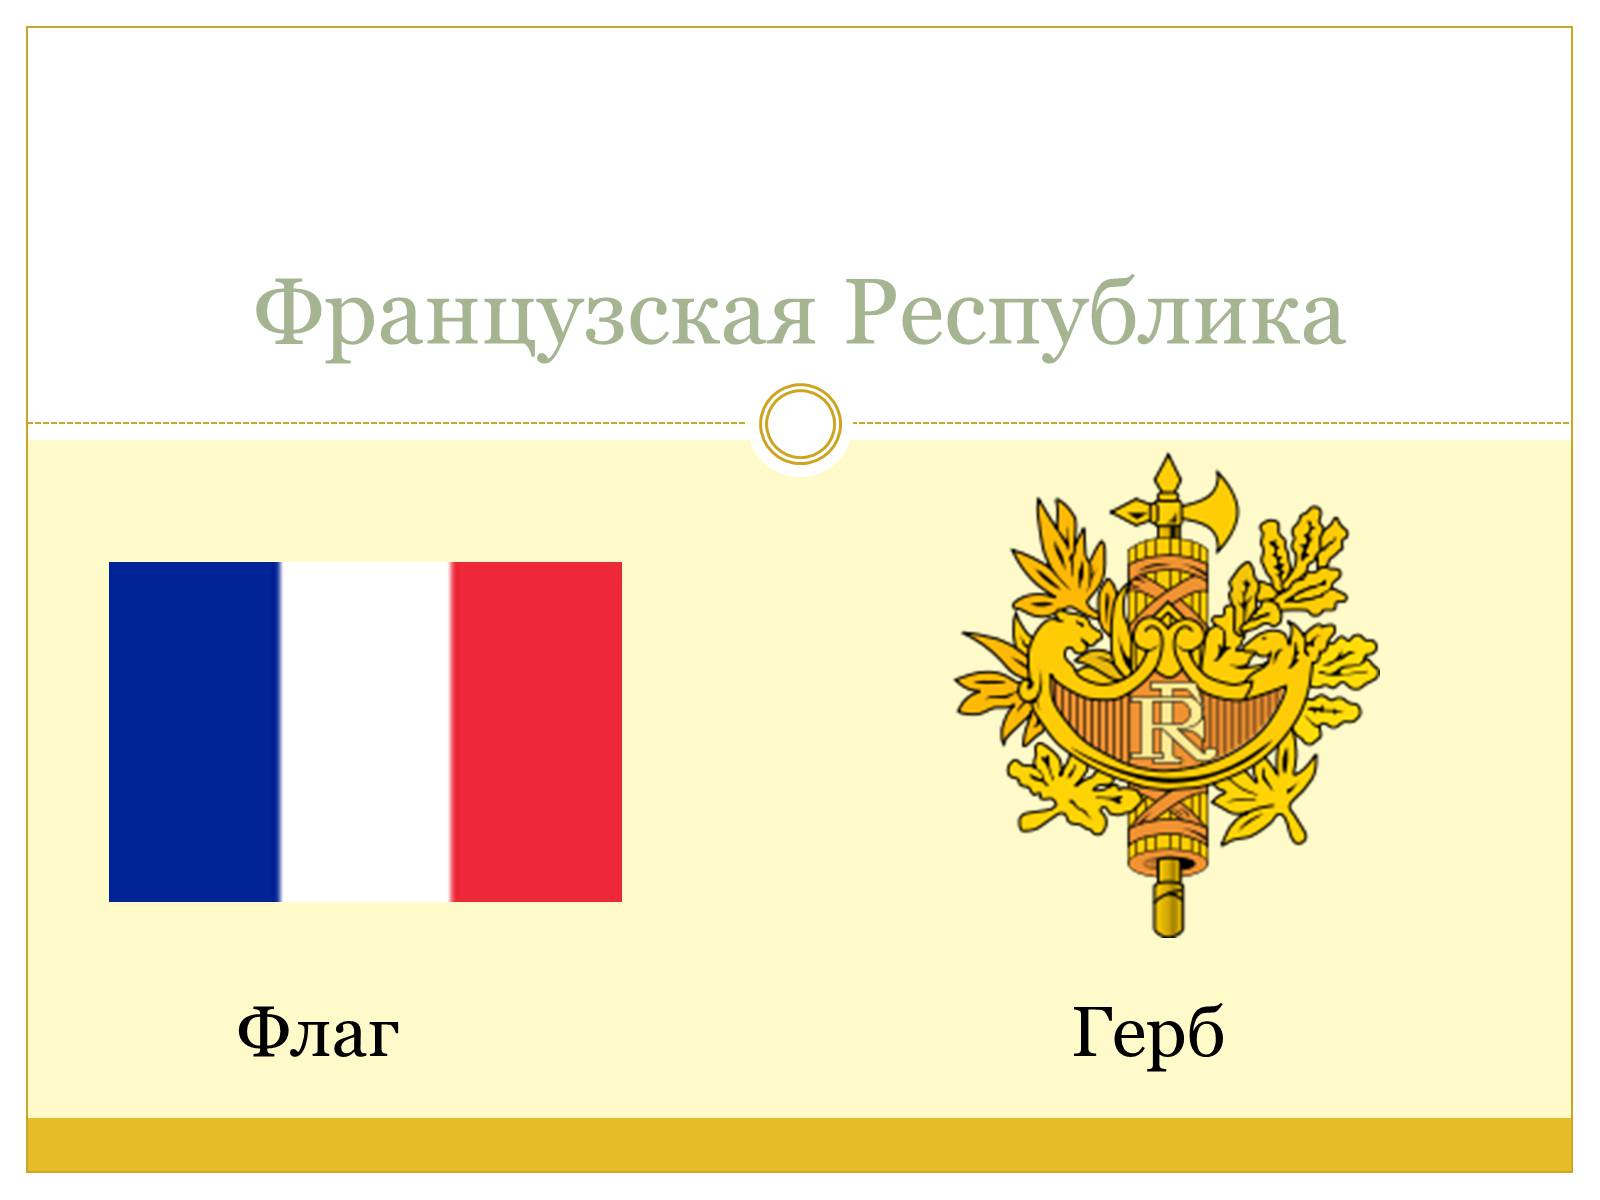 Пятой французской республики. Флаг второй французской Республики. Флаг 3 французской Республики. Флаг 1 французской Республики. Вторая французская Республика герб.